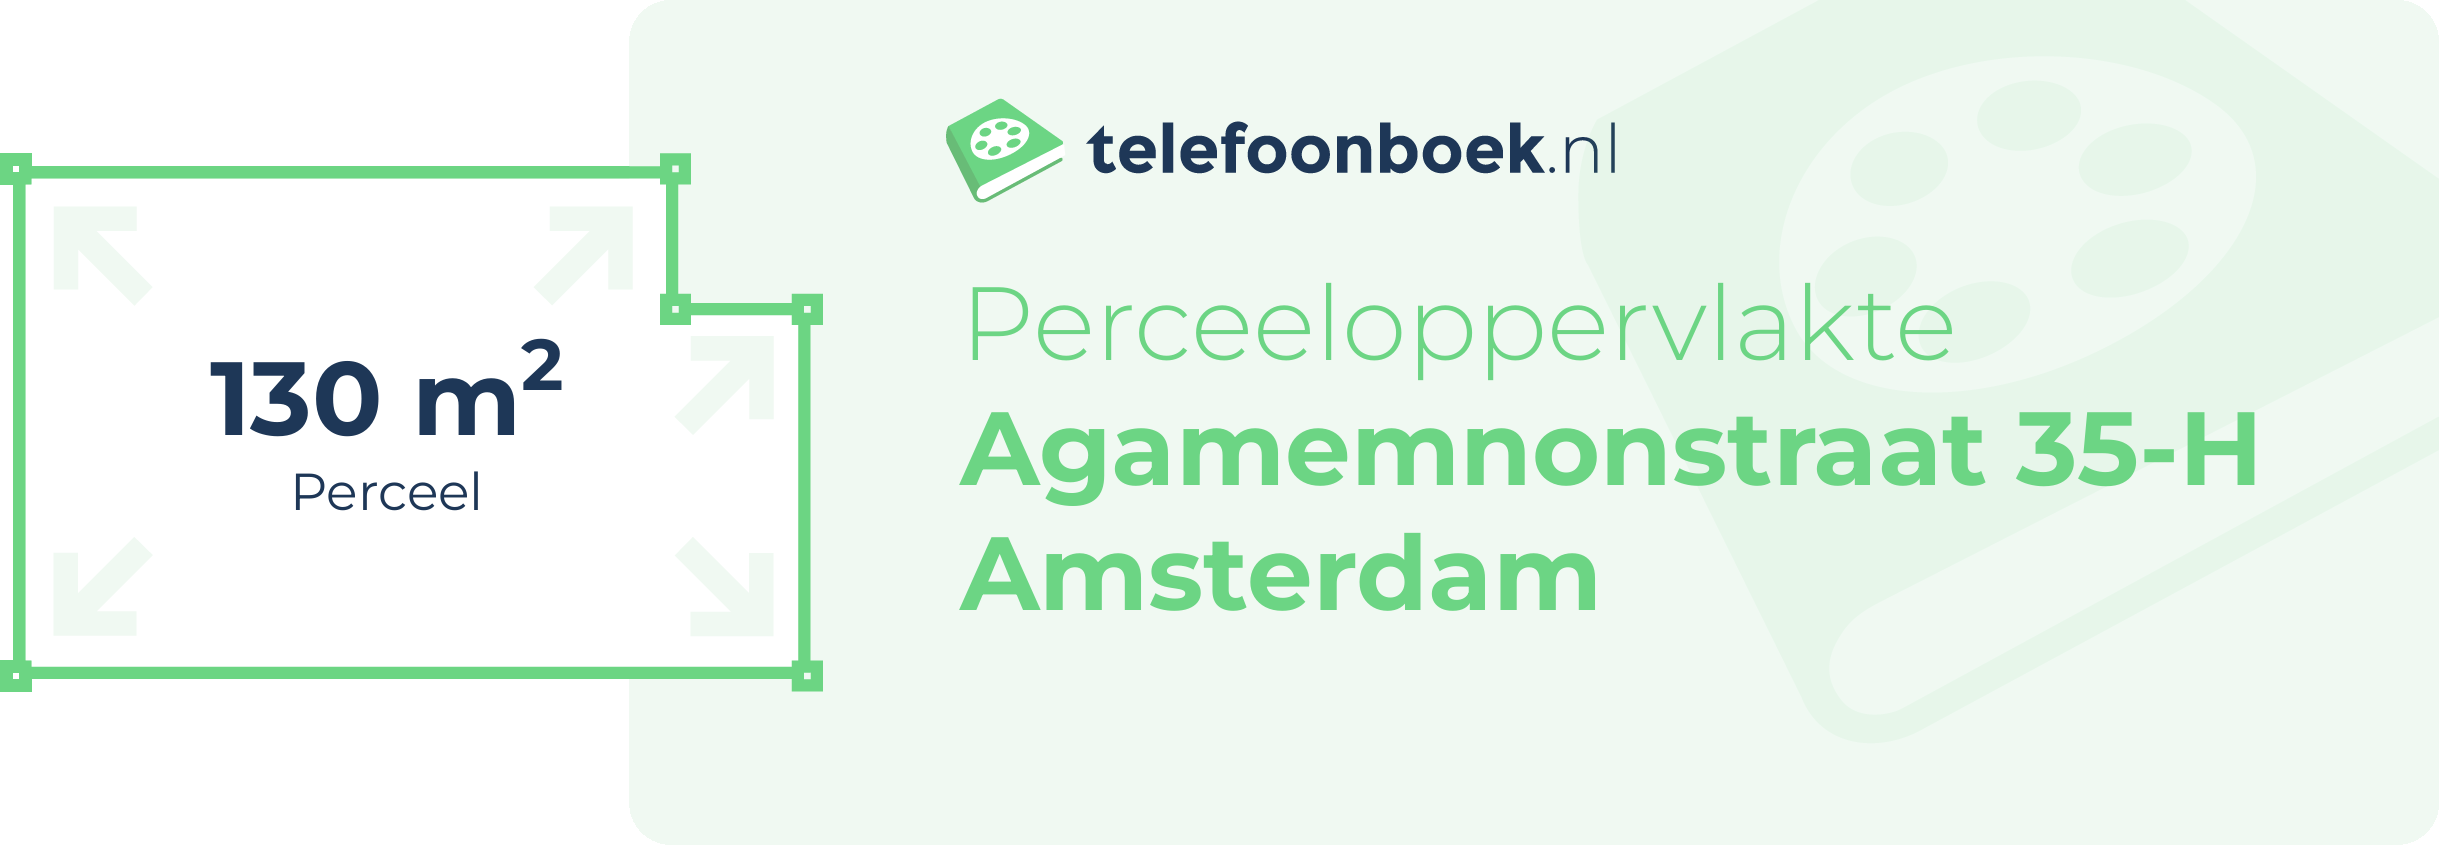 Perceeloppervlakte Agamemnonstraat 35-H Amsterdam